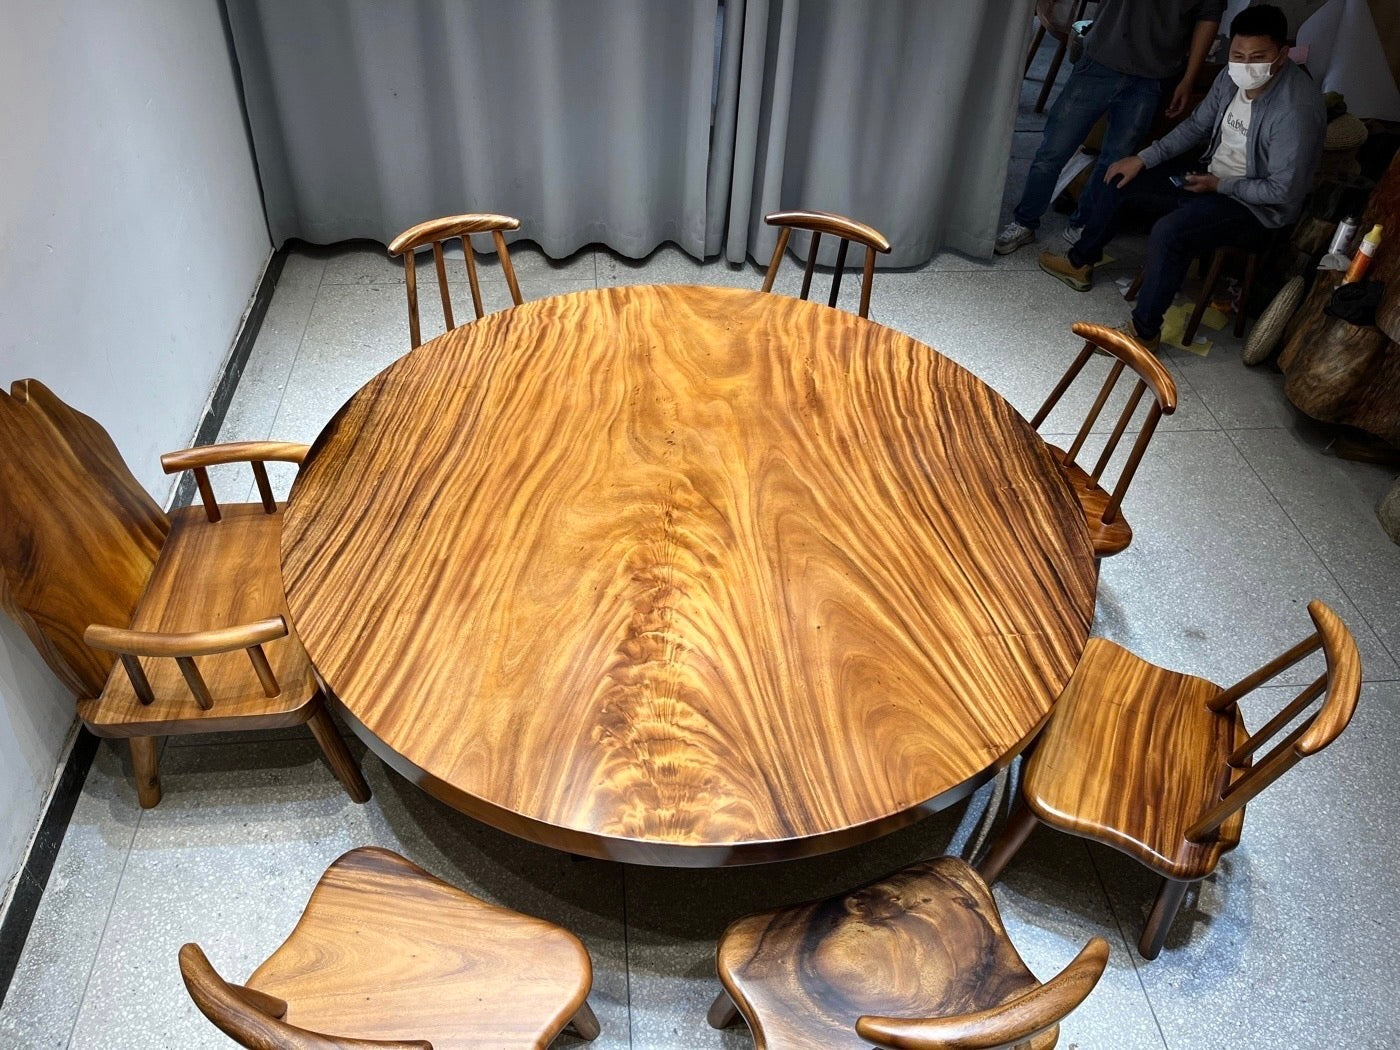 71" stort runt bord i trä, runt bord i massivt trä, rundbordsfot i trä, stort runt bord i trä